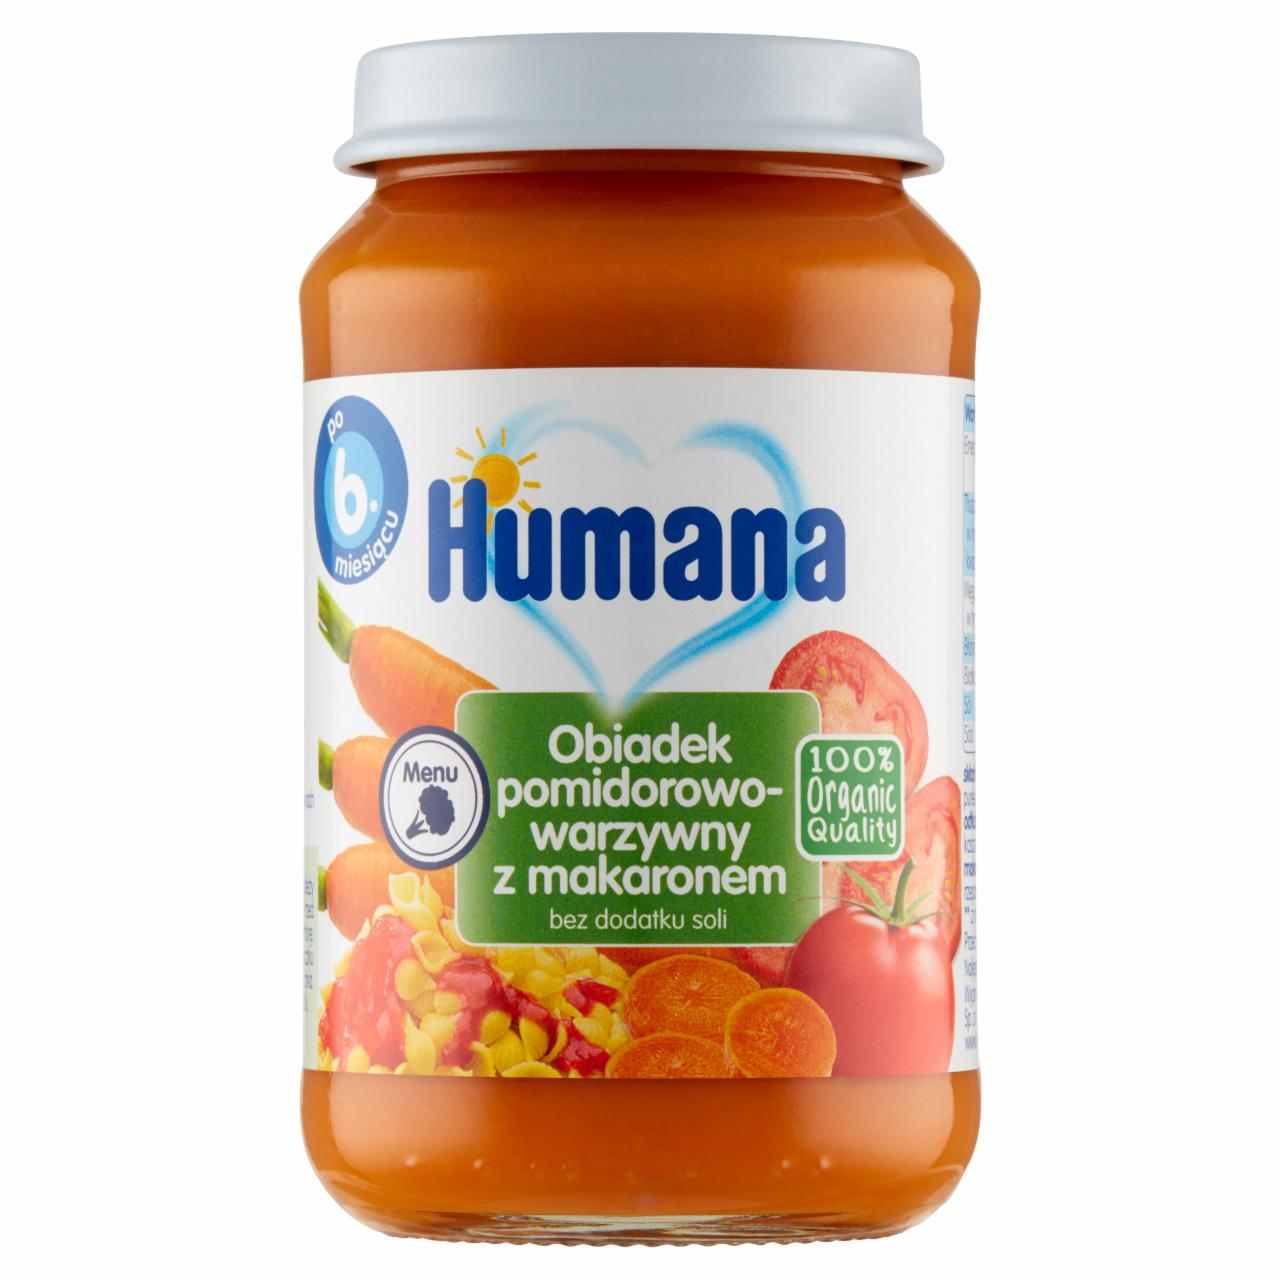 Zdjęcia - Humana 100% Organic Obiadek pomidorowo-warzywny z makaronem po 6. miesiącu 190 g